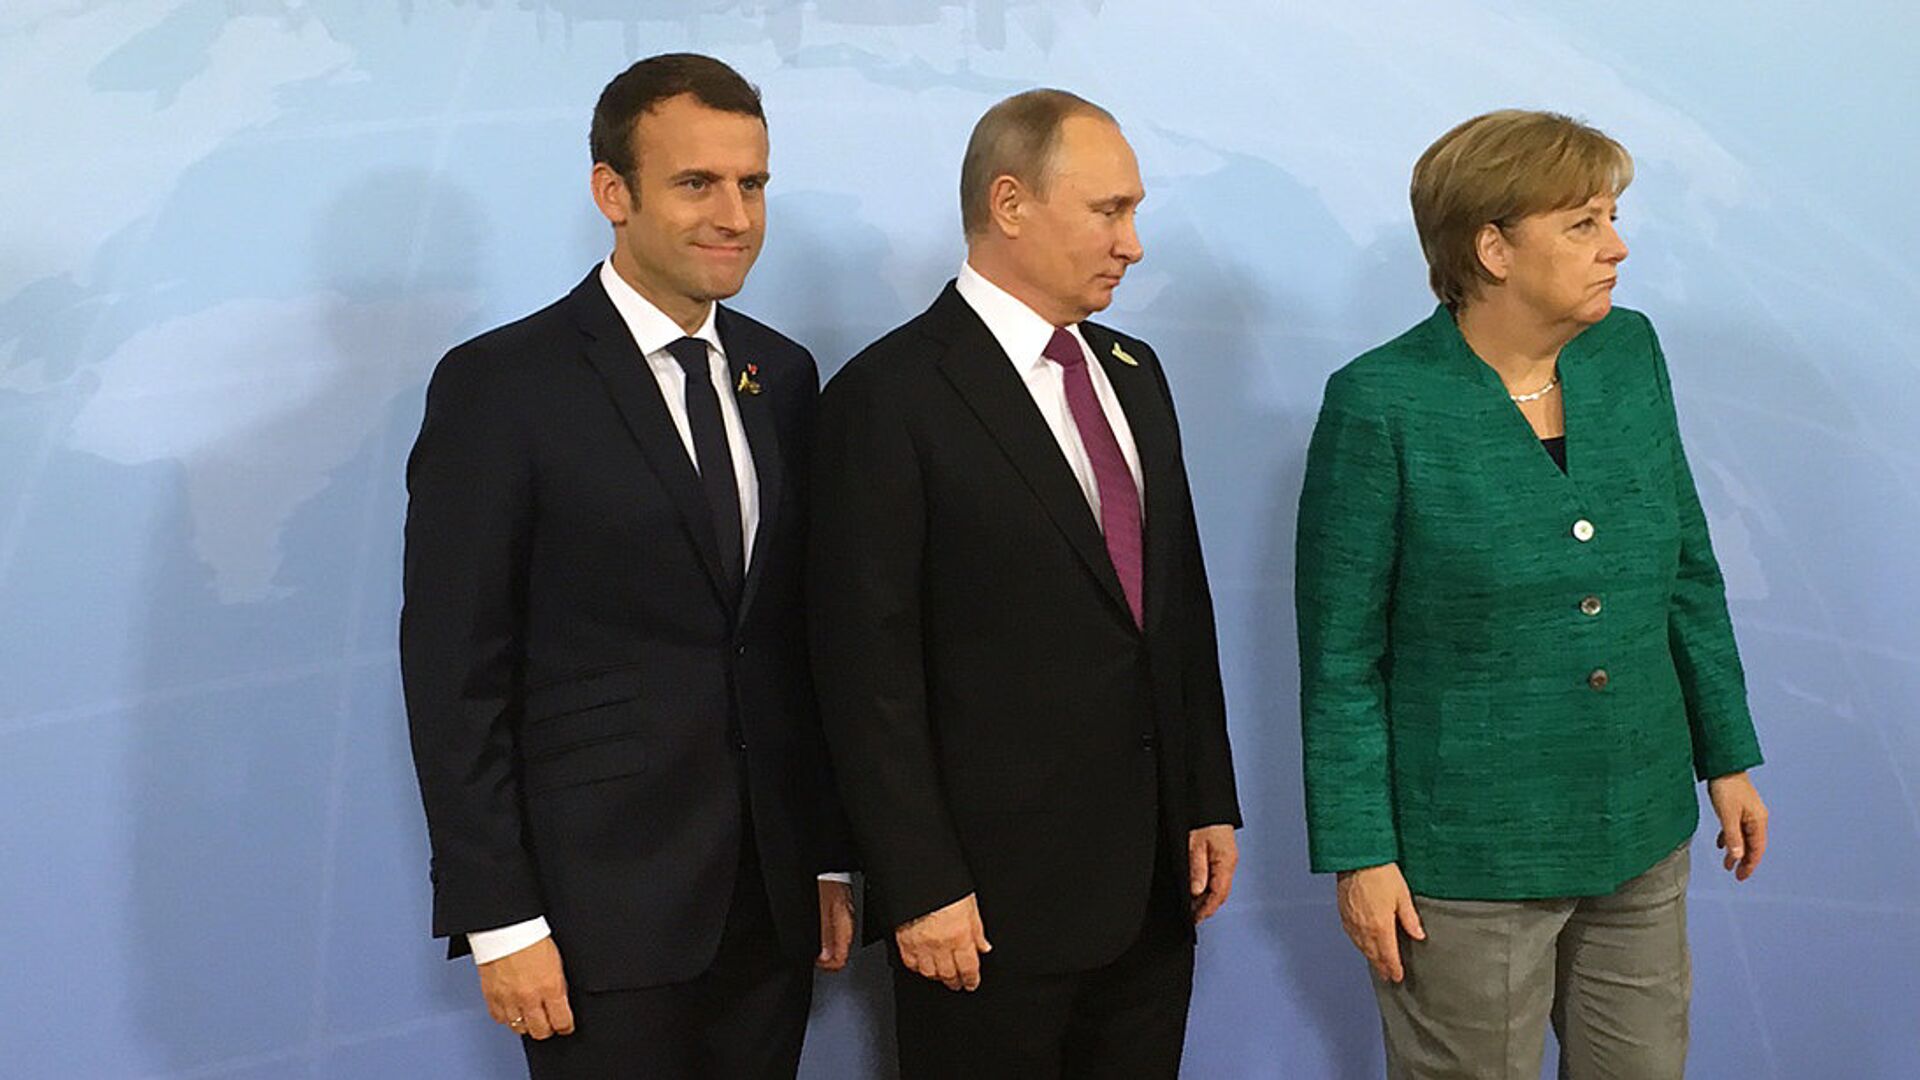 Президент России Владимир Путин, канцлер ФРГ Ангела Меркель и президент Франции Эммануэль Макрон во время встречи на саммите G20 в Гамбурге. 8 июля 2017 - ИноСМИ, 1920, 12.11.2021